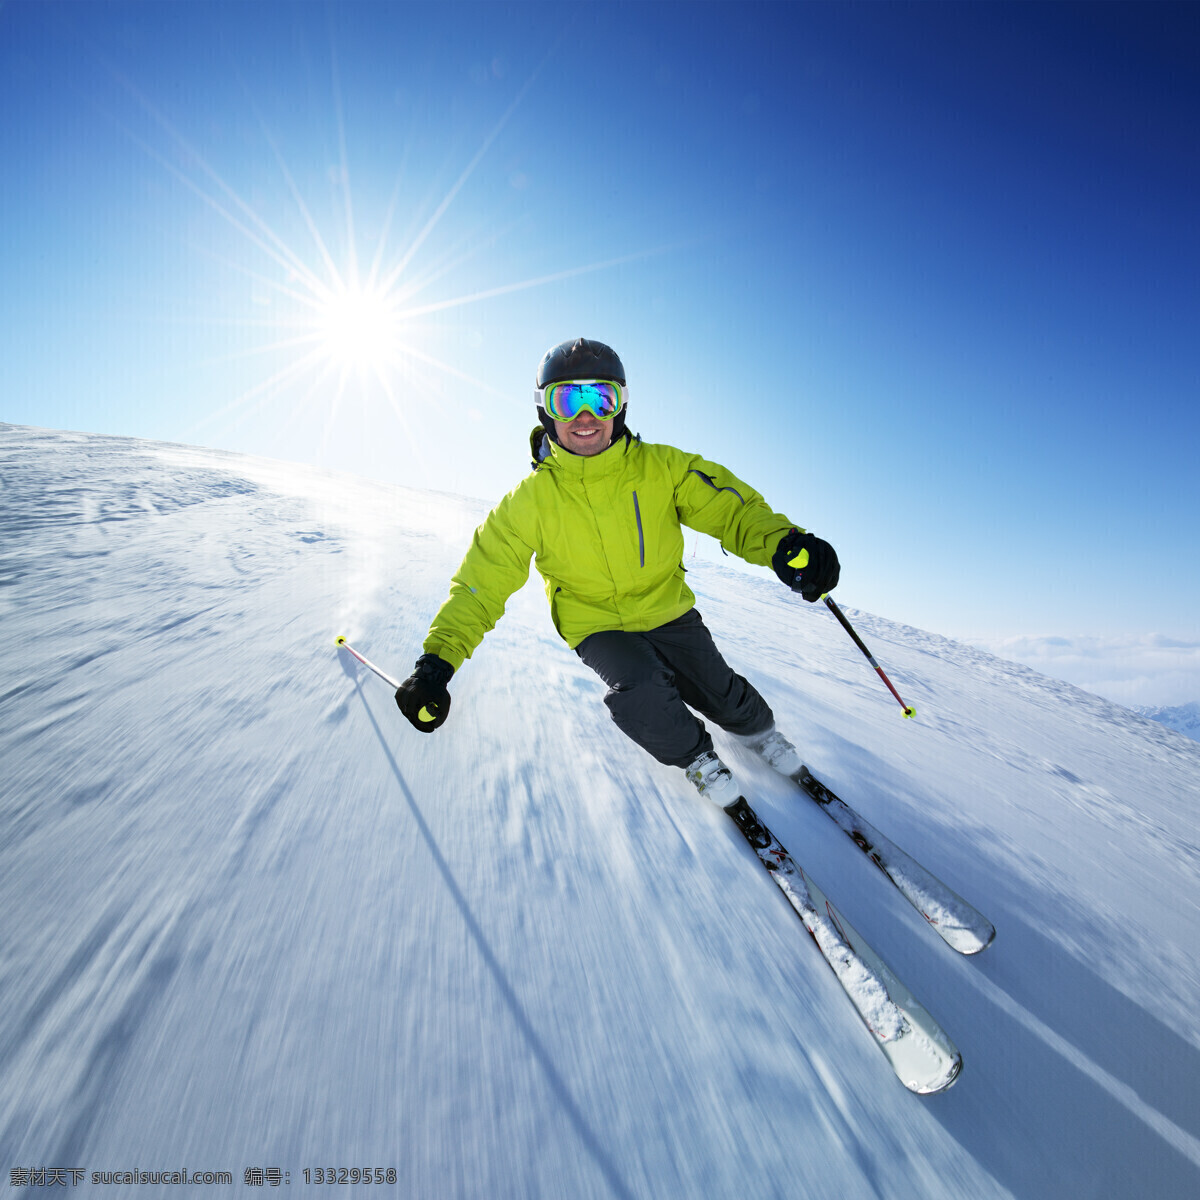 向下 滑雪 人物 阳光 运动 雪地 雪花 滑雪板 户外运动 其他类别 生活百科 蓝色